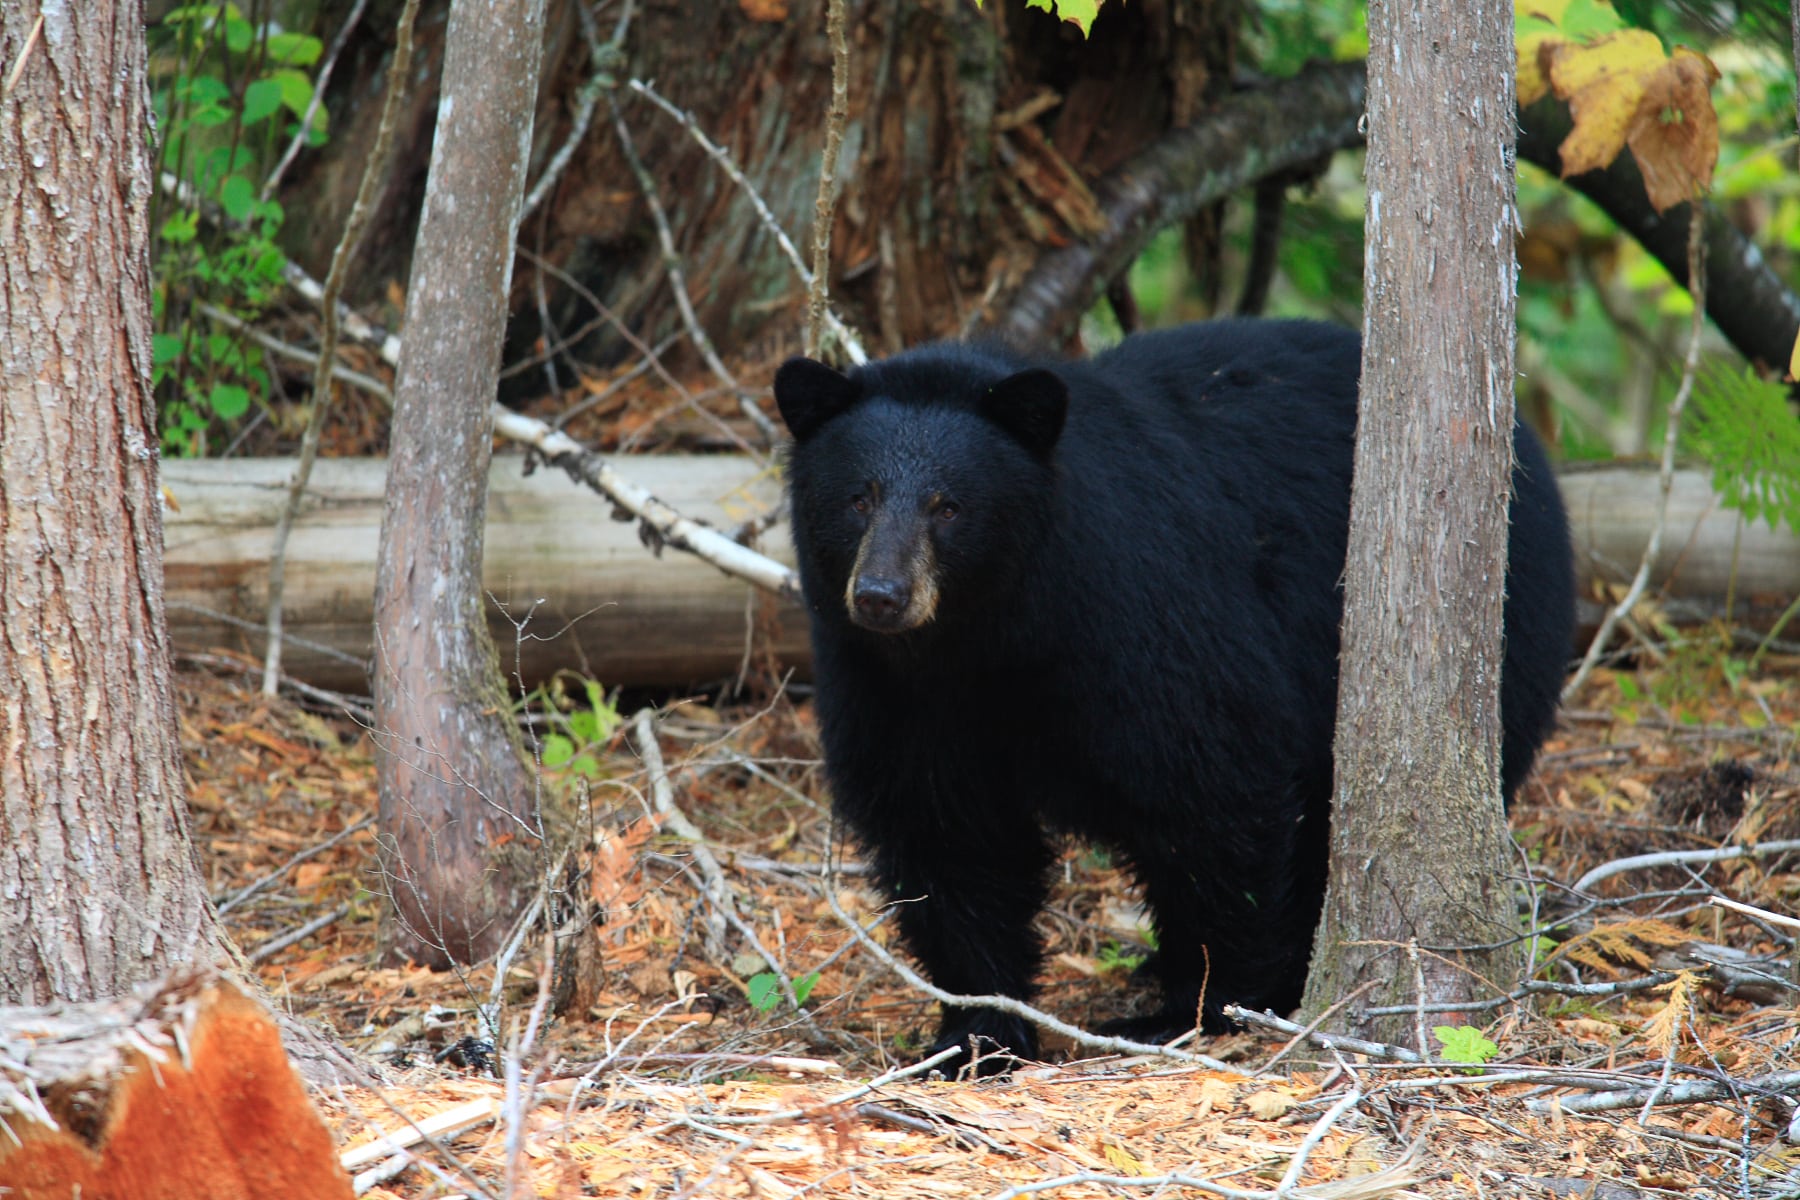 Bear-watching at Wild Bear Lodge